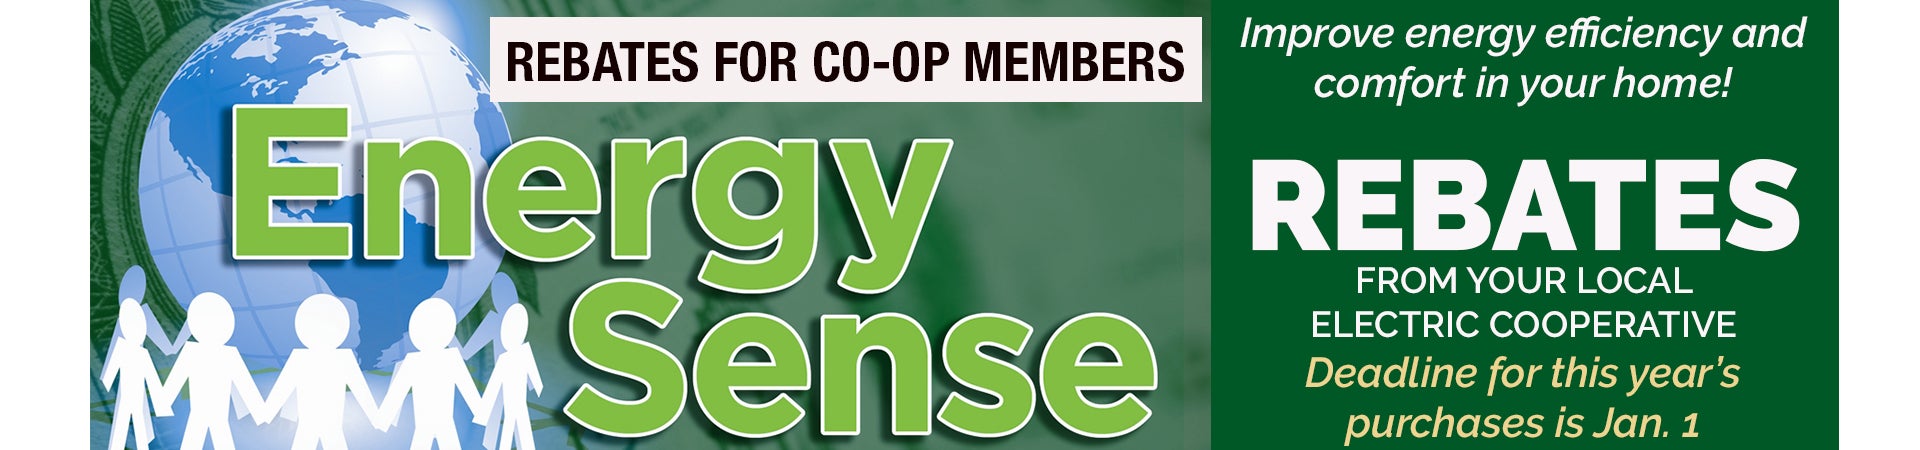 EnergySense rebates for co-op members